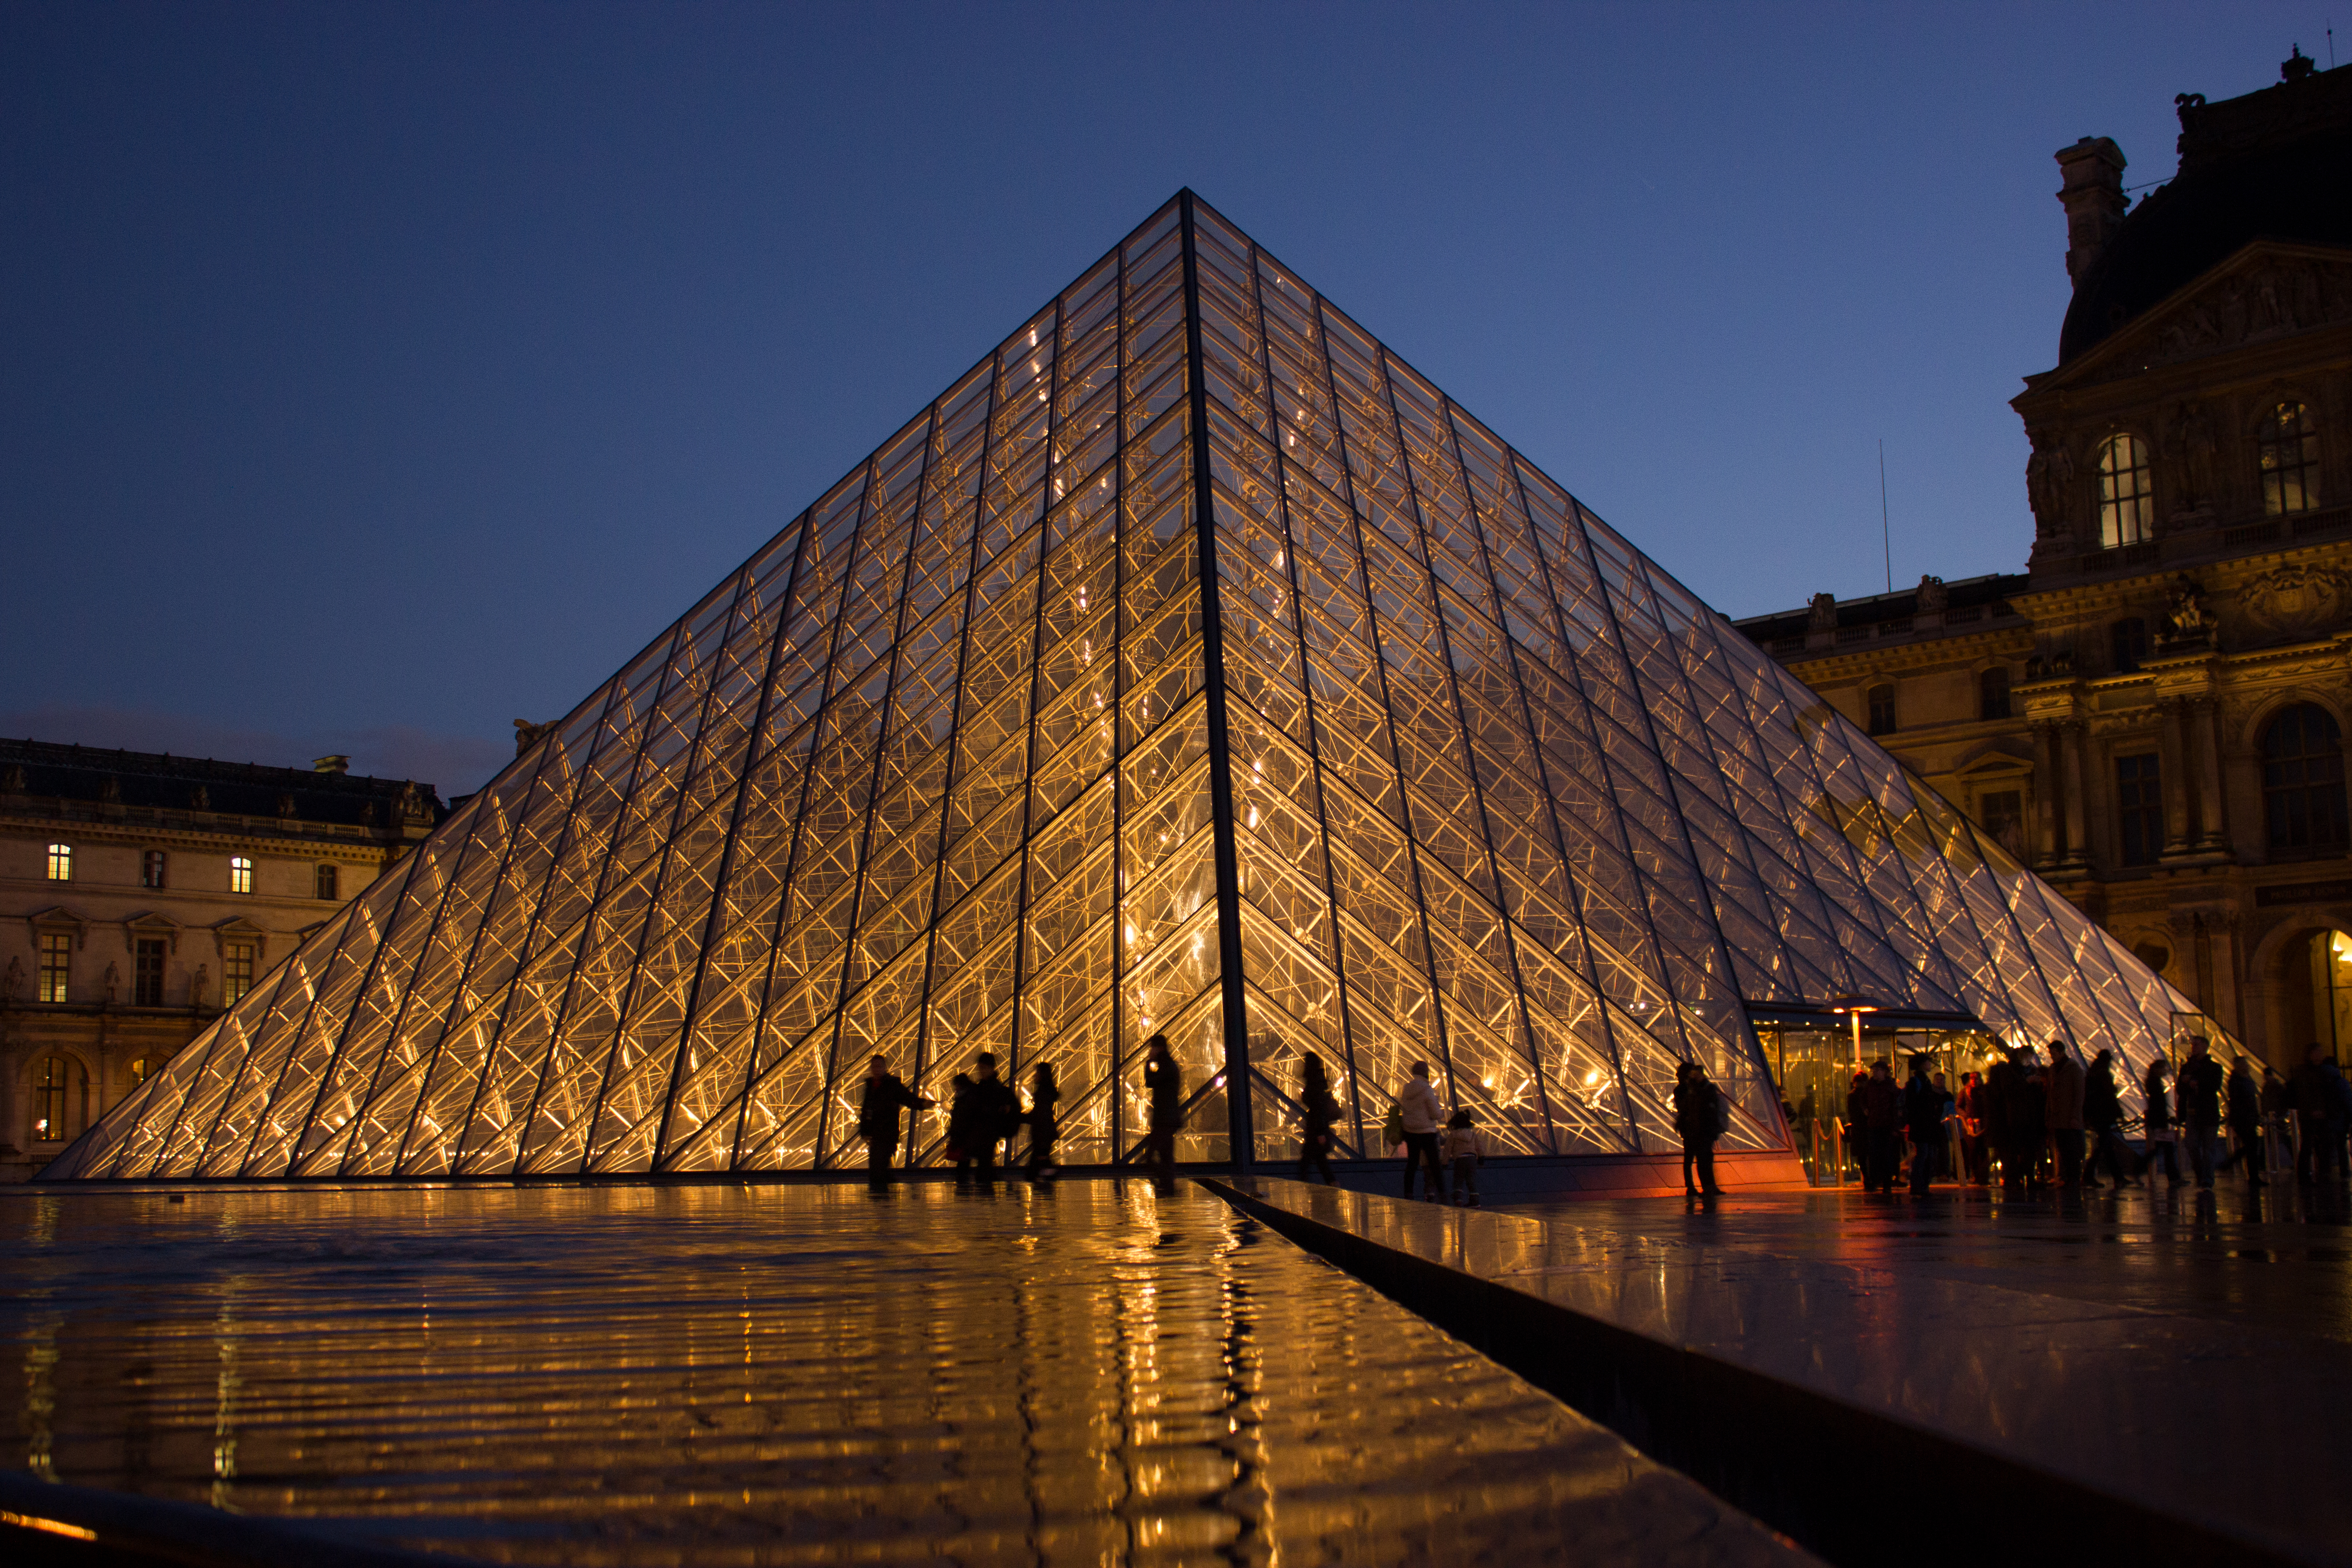 Louvre Wikipedia